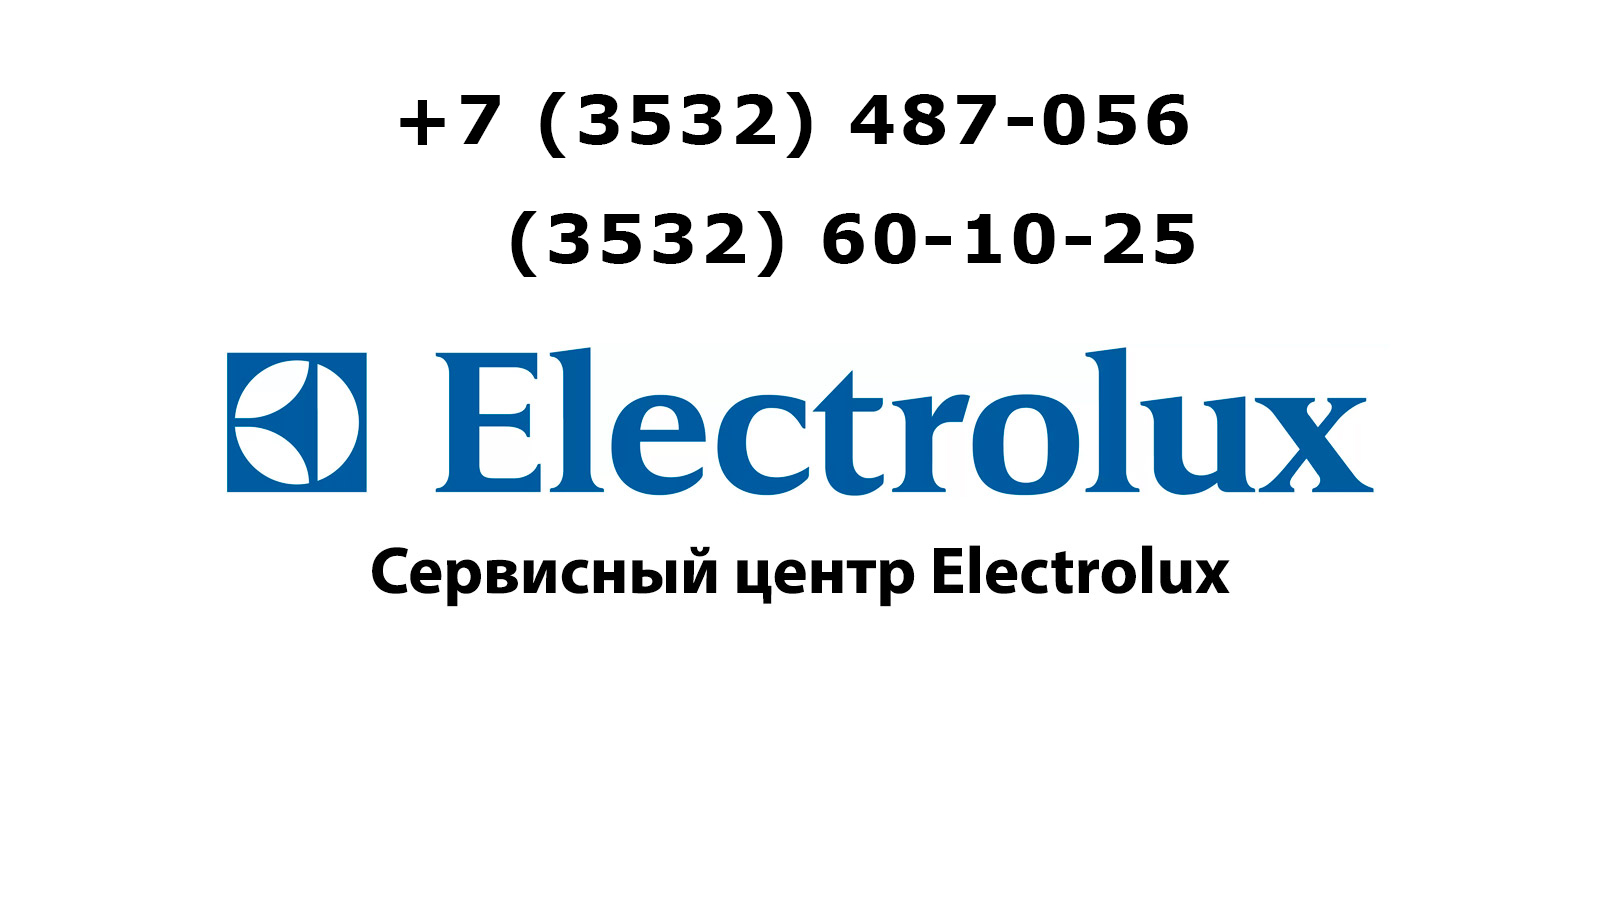 Ремонт стиральных машин электролюкс сервисный центр. Сервисный центр Электролюкс. СЦ Электролюкс. Сервисный центр Electrolux в Москве.